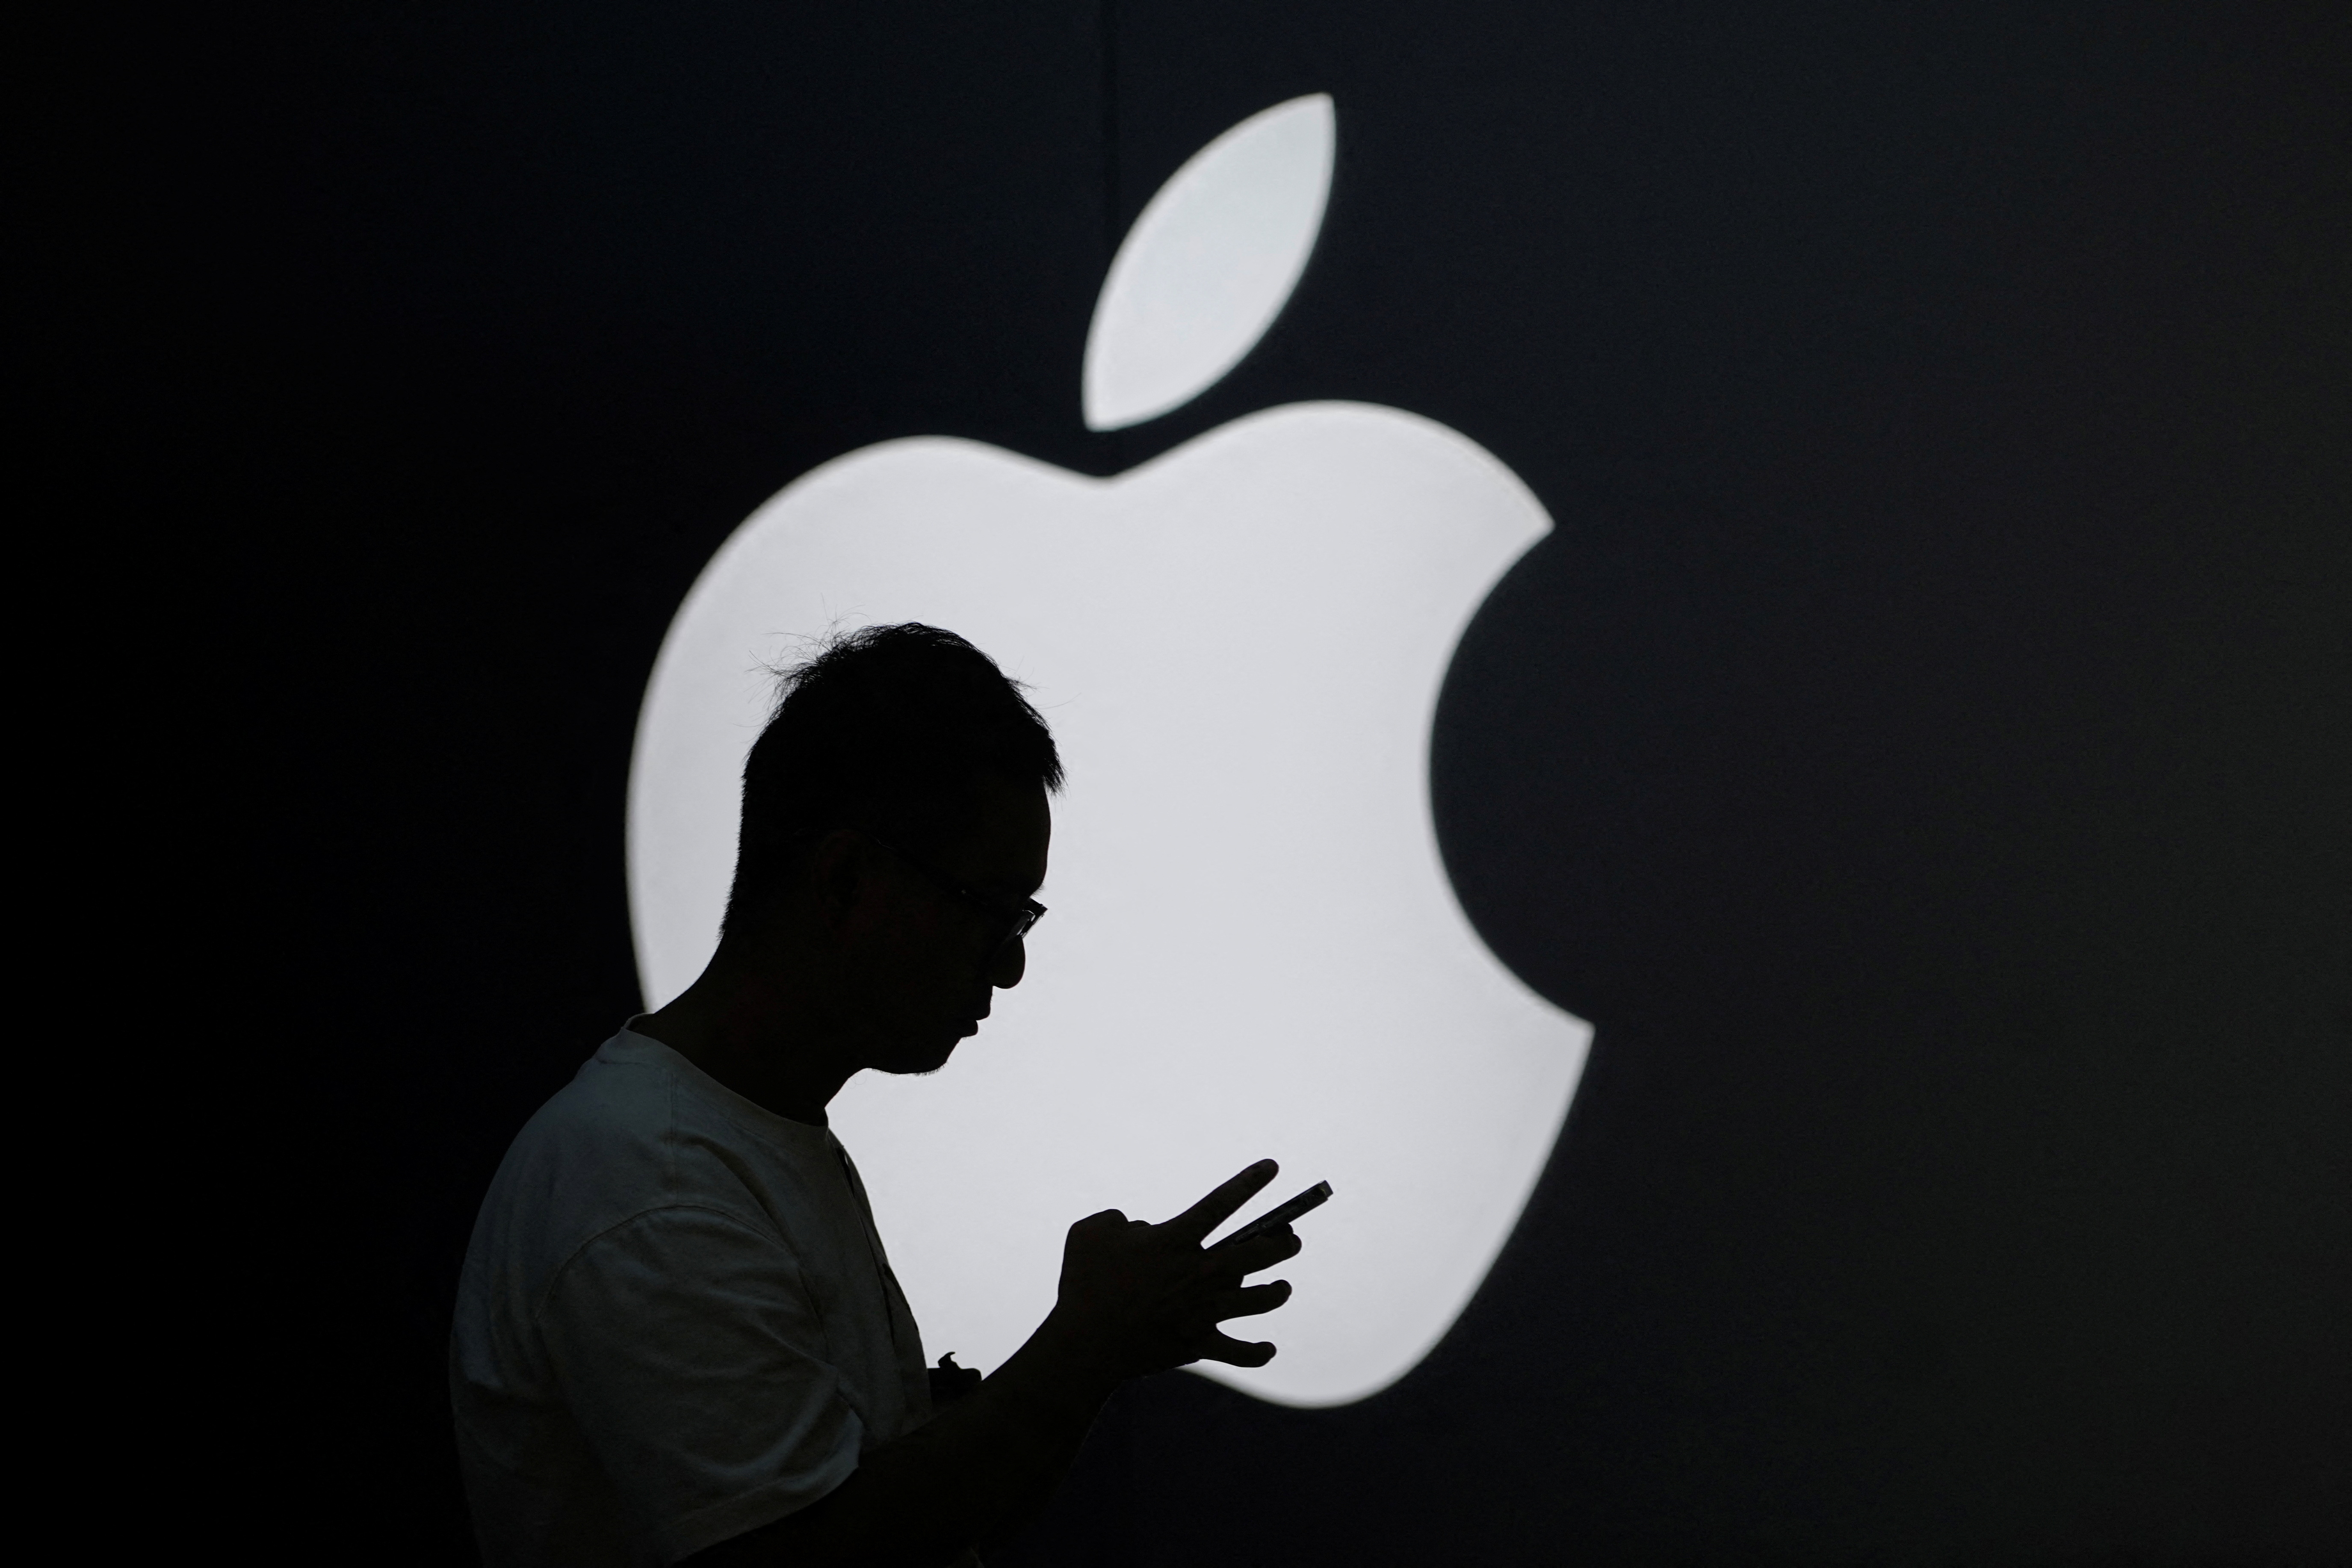 به گزارش وال استریت ژورنال، اپل و چین برای بحث در مورد سرکوب اپلیکیشن های غربی توسط پکن ملاقات کردند